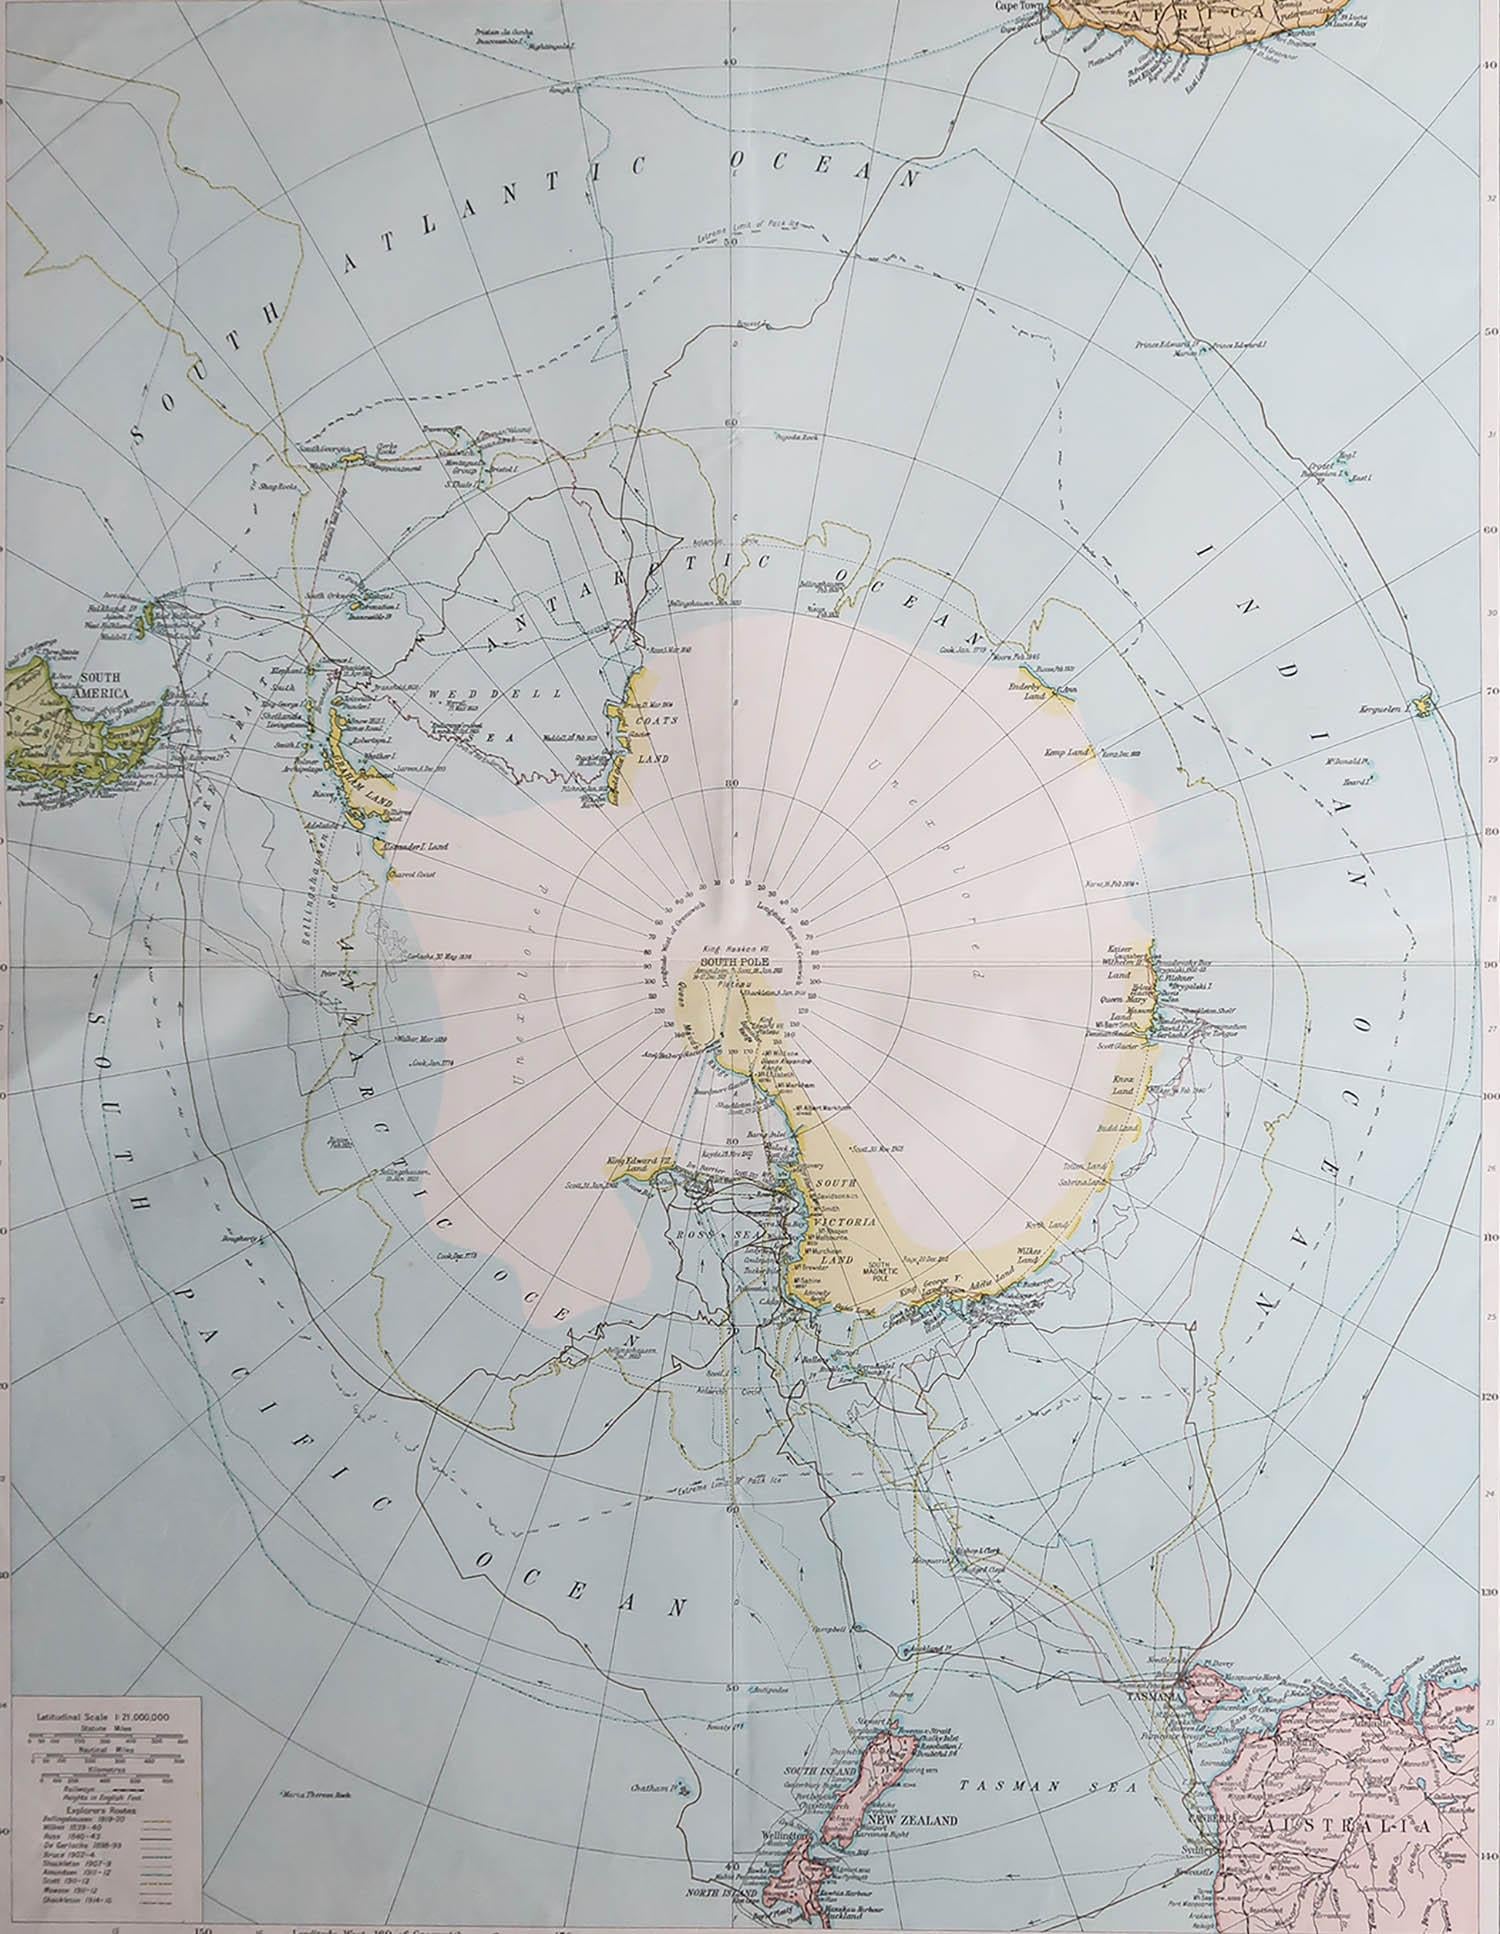 Tolle Karte des Südpols

Originalfarbe.

Herausgegeben von Alexander Gross

Ungerahmt.

Reparaturen kleinerer Randeinrisse








